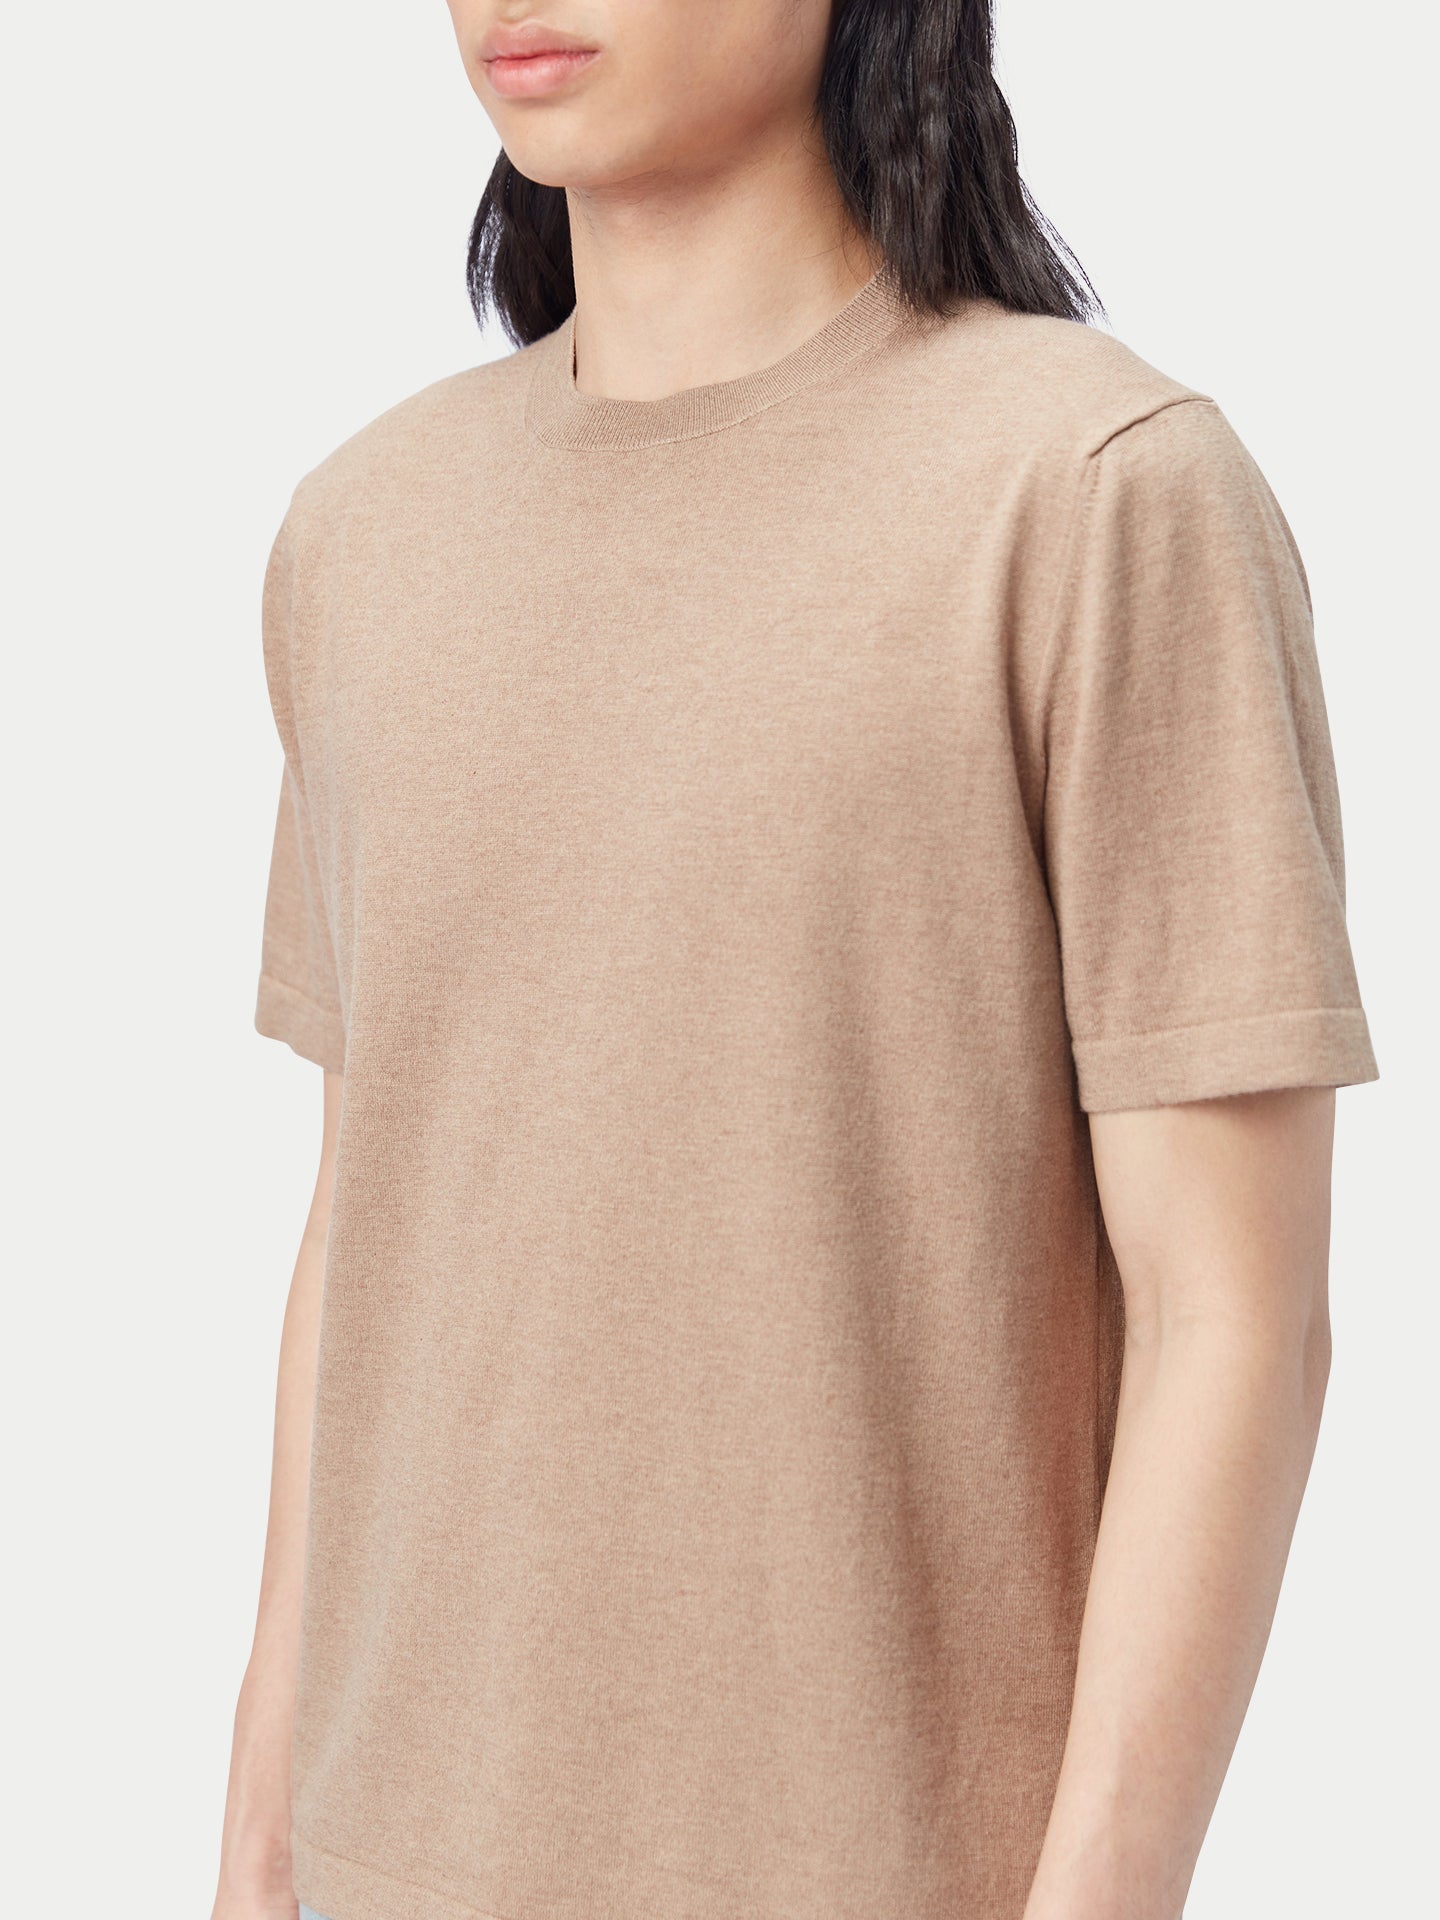 Men's Cotton Silk Cashmere Blend T-shirt Timber Wolf - Gobi Cashmere